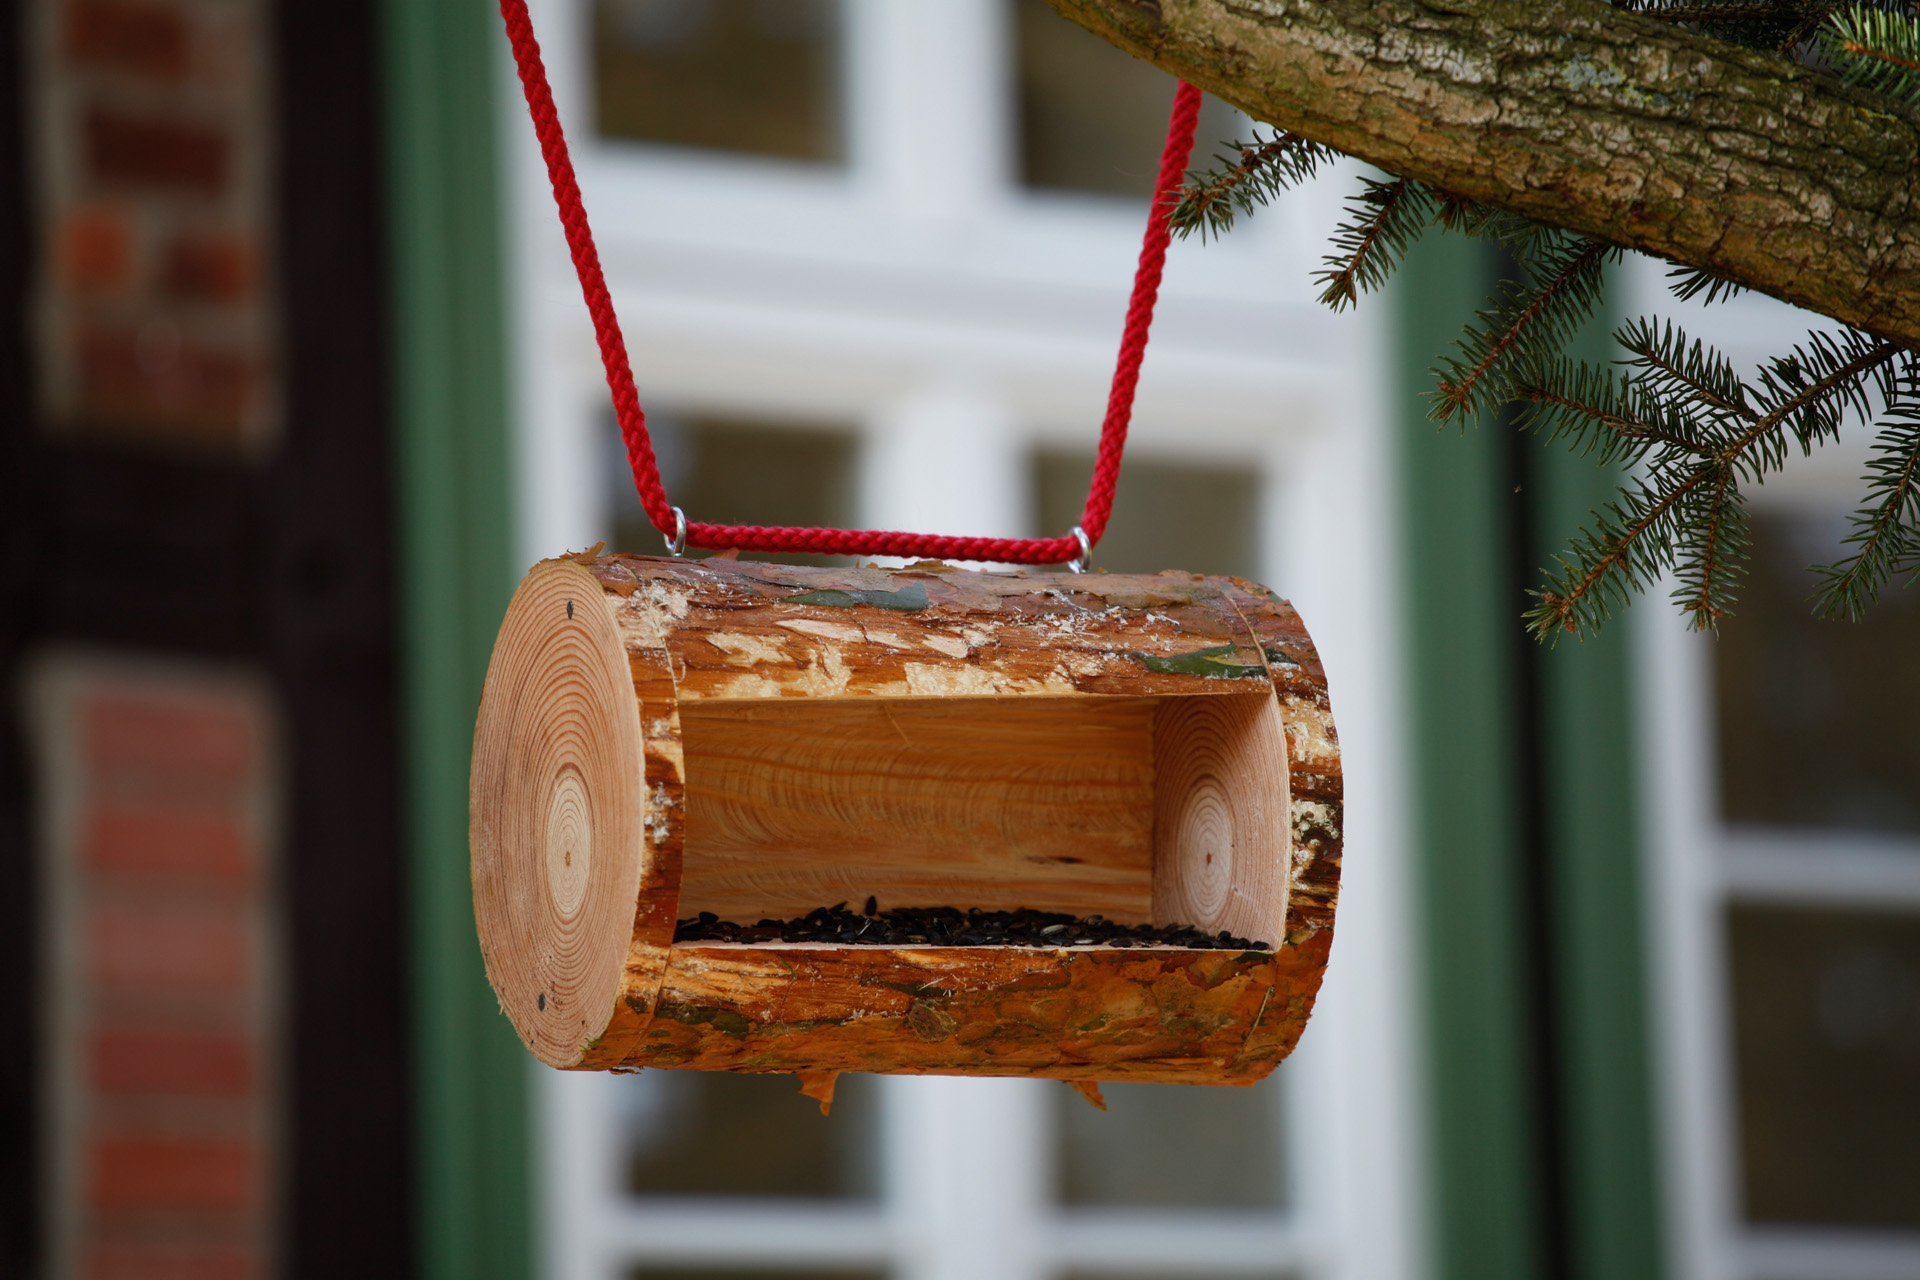 Une mangeoire à oiseaux en bois terminée, accrochée à une branche à l’aide d’une corde rouge.